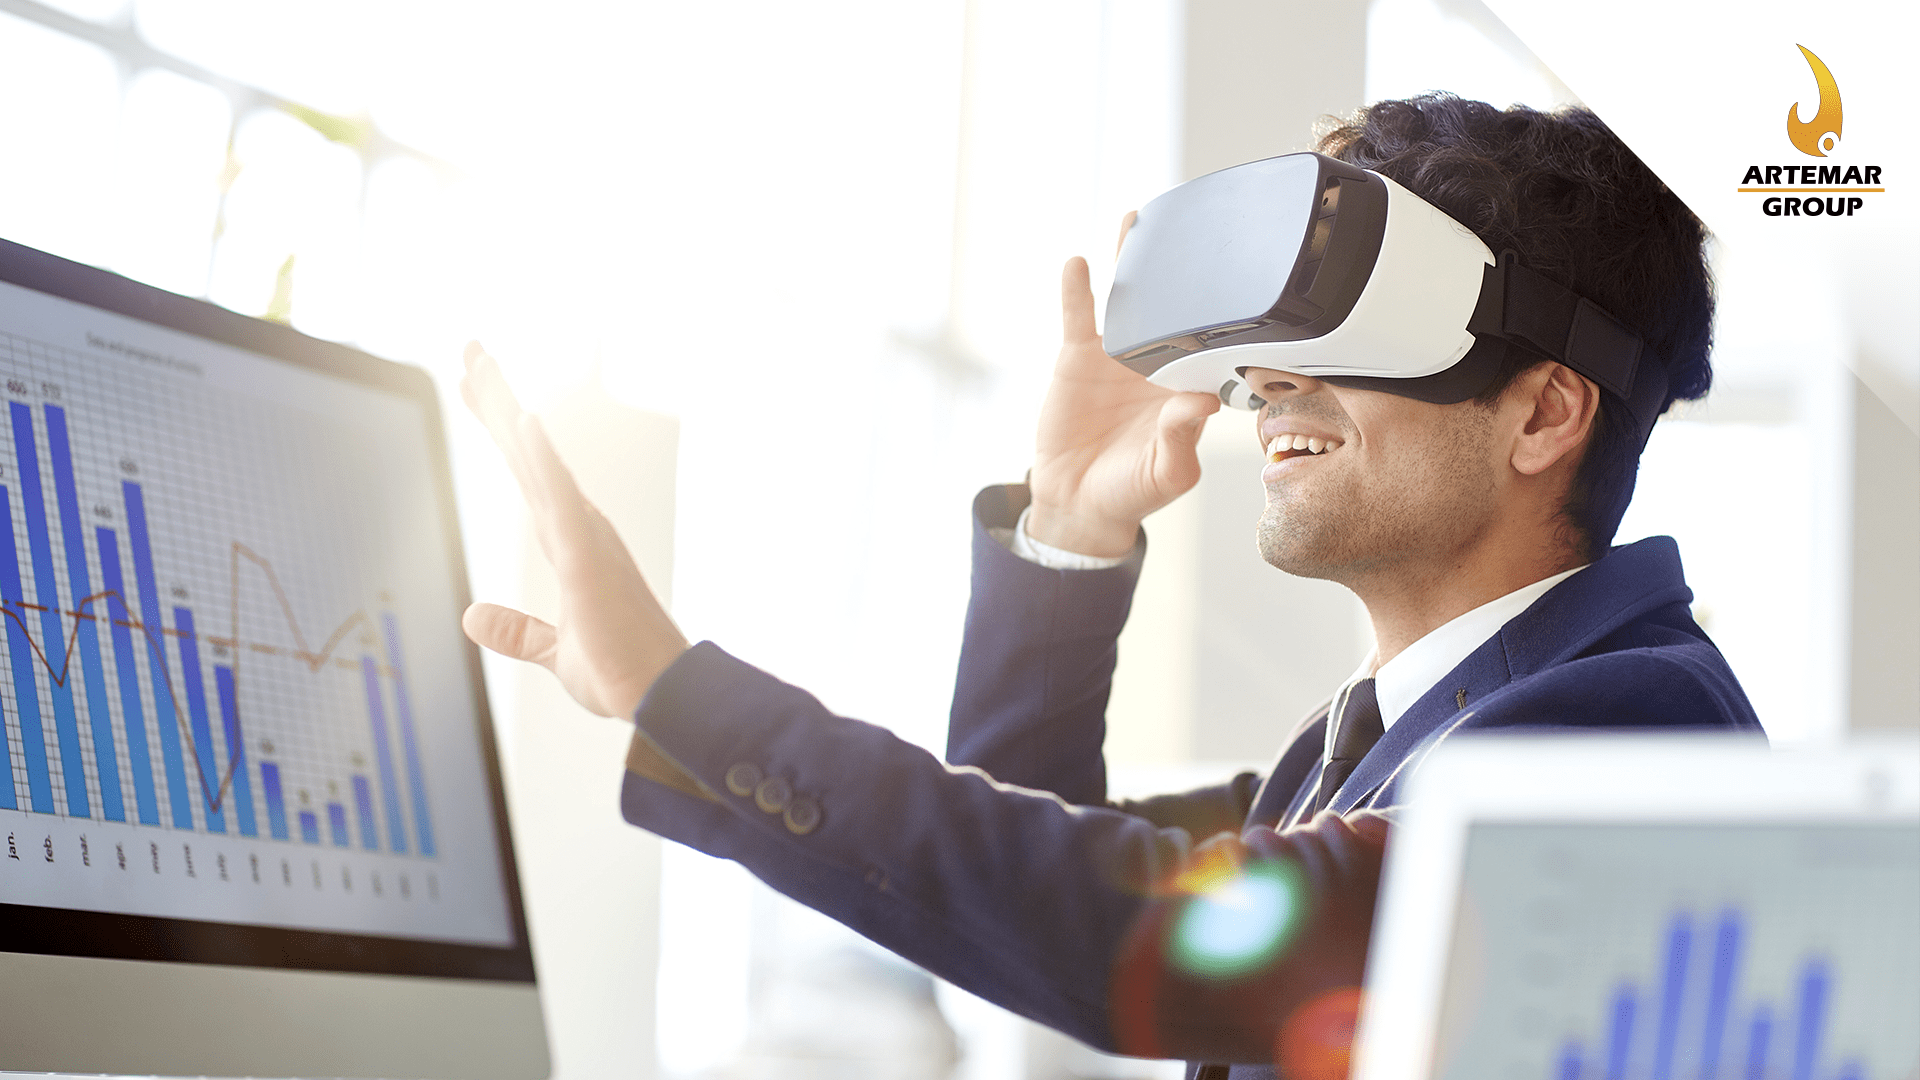 Capacitación Industrial dentro de la realidad virtual?